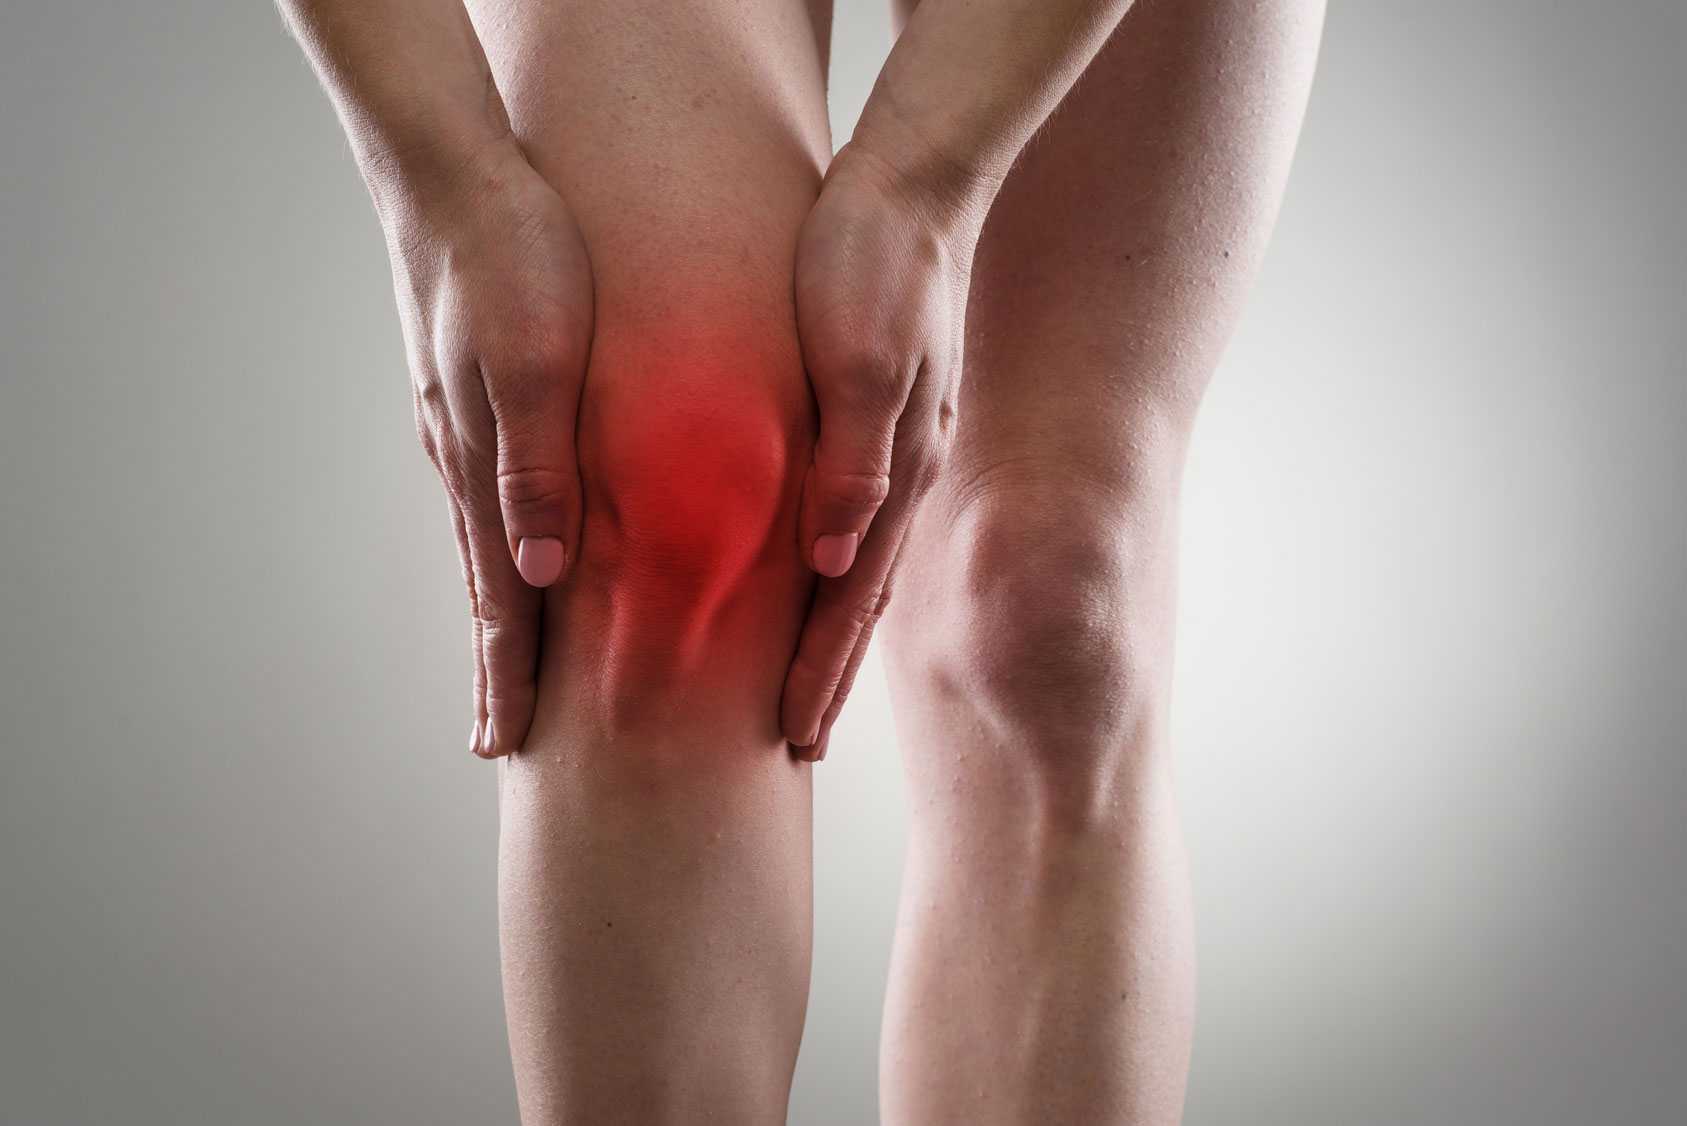 Beneficios terapéuticos de la acupuntura en el tratamiento de la artrosis de rodilla